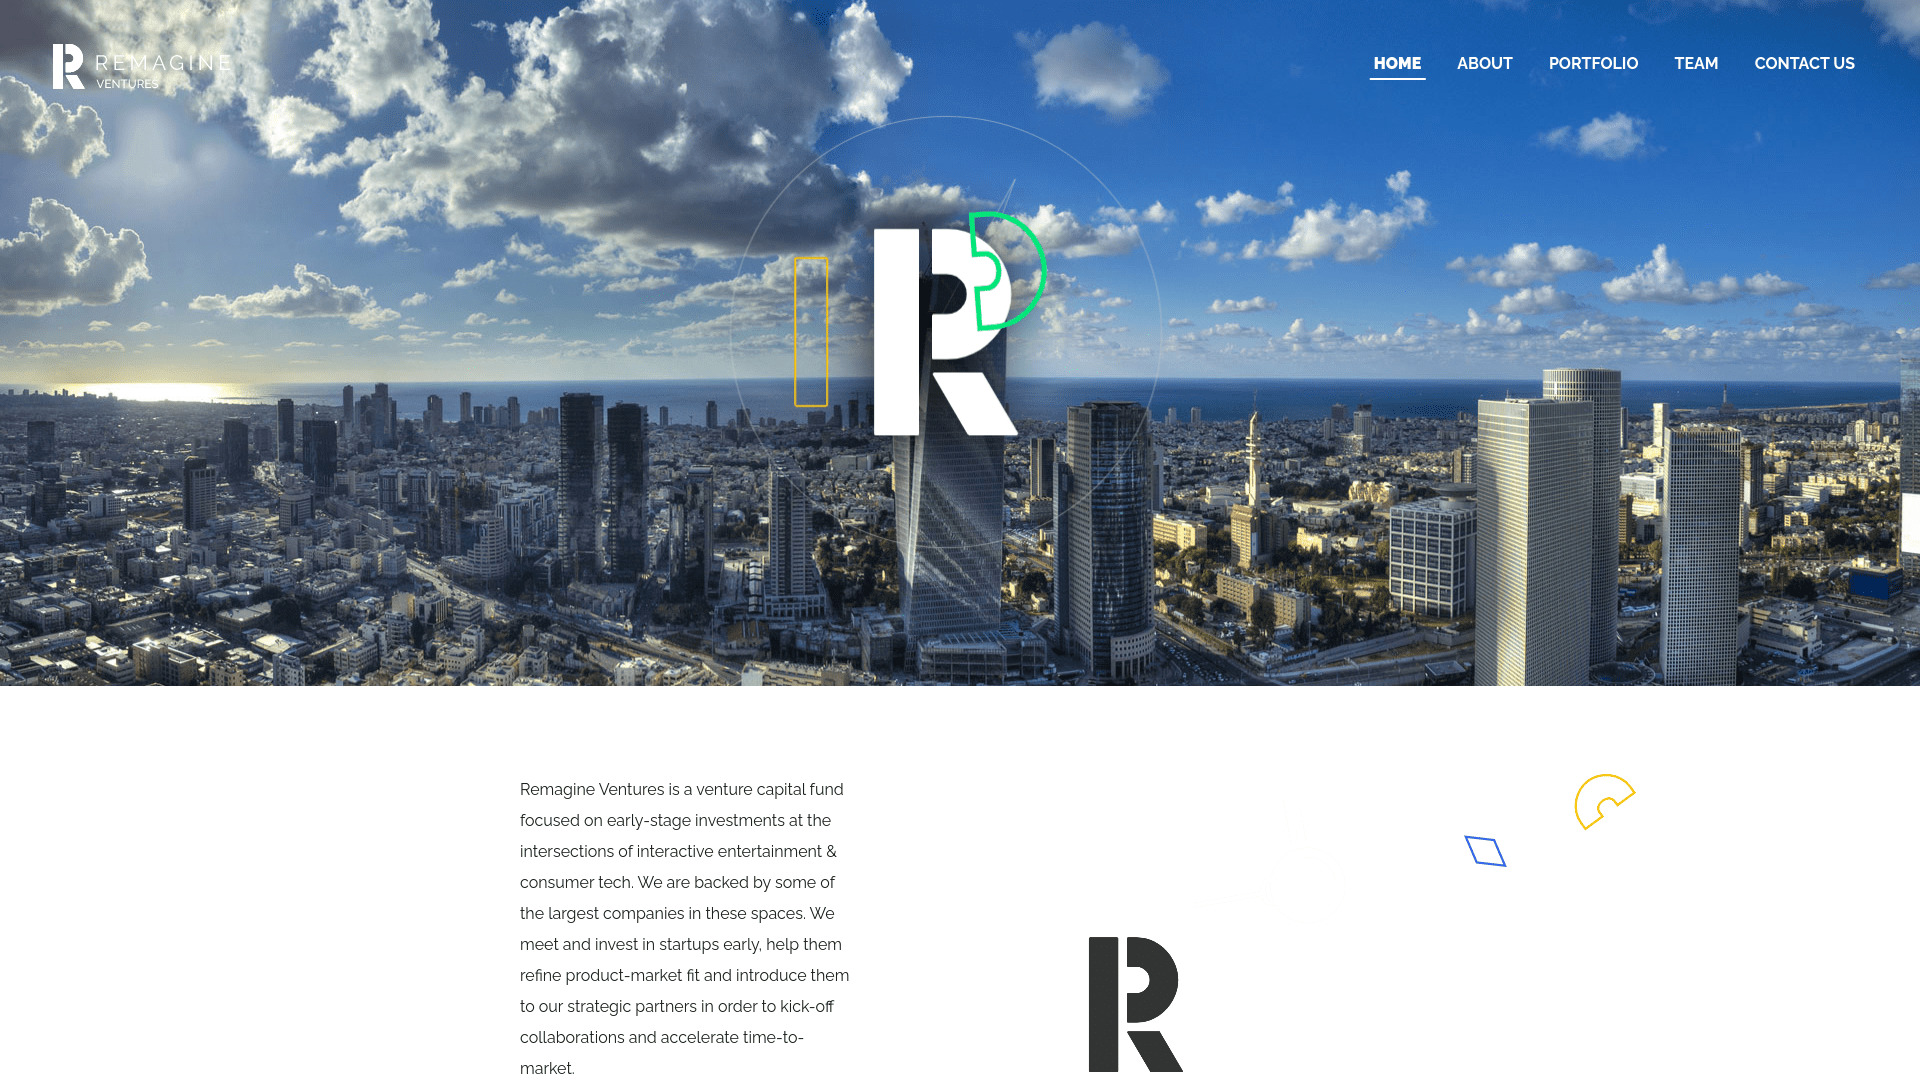 Screenshot of the Regmaine Ventures website.